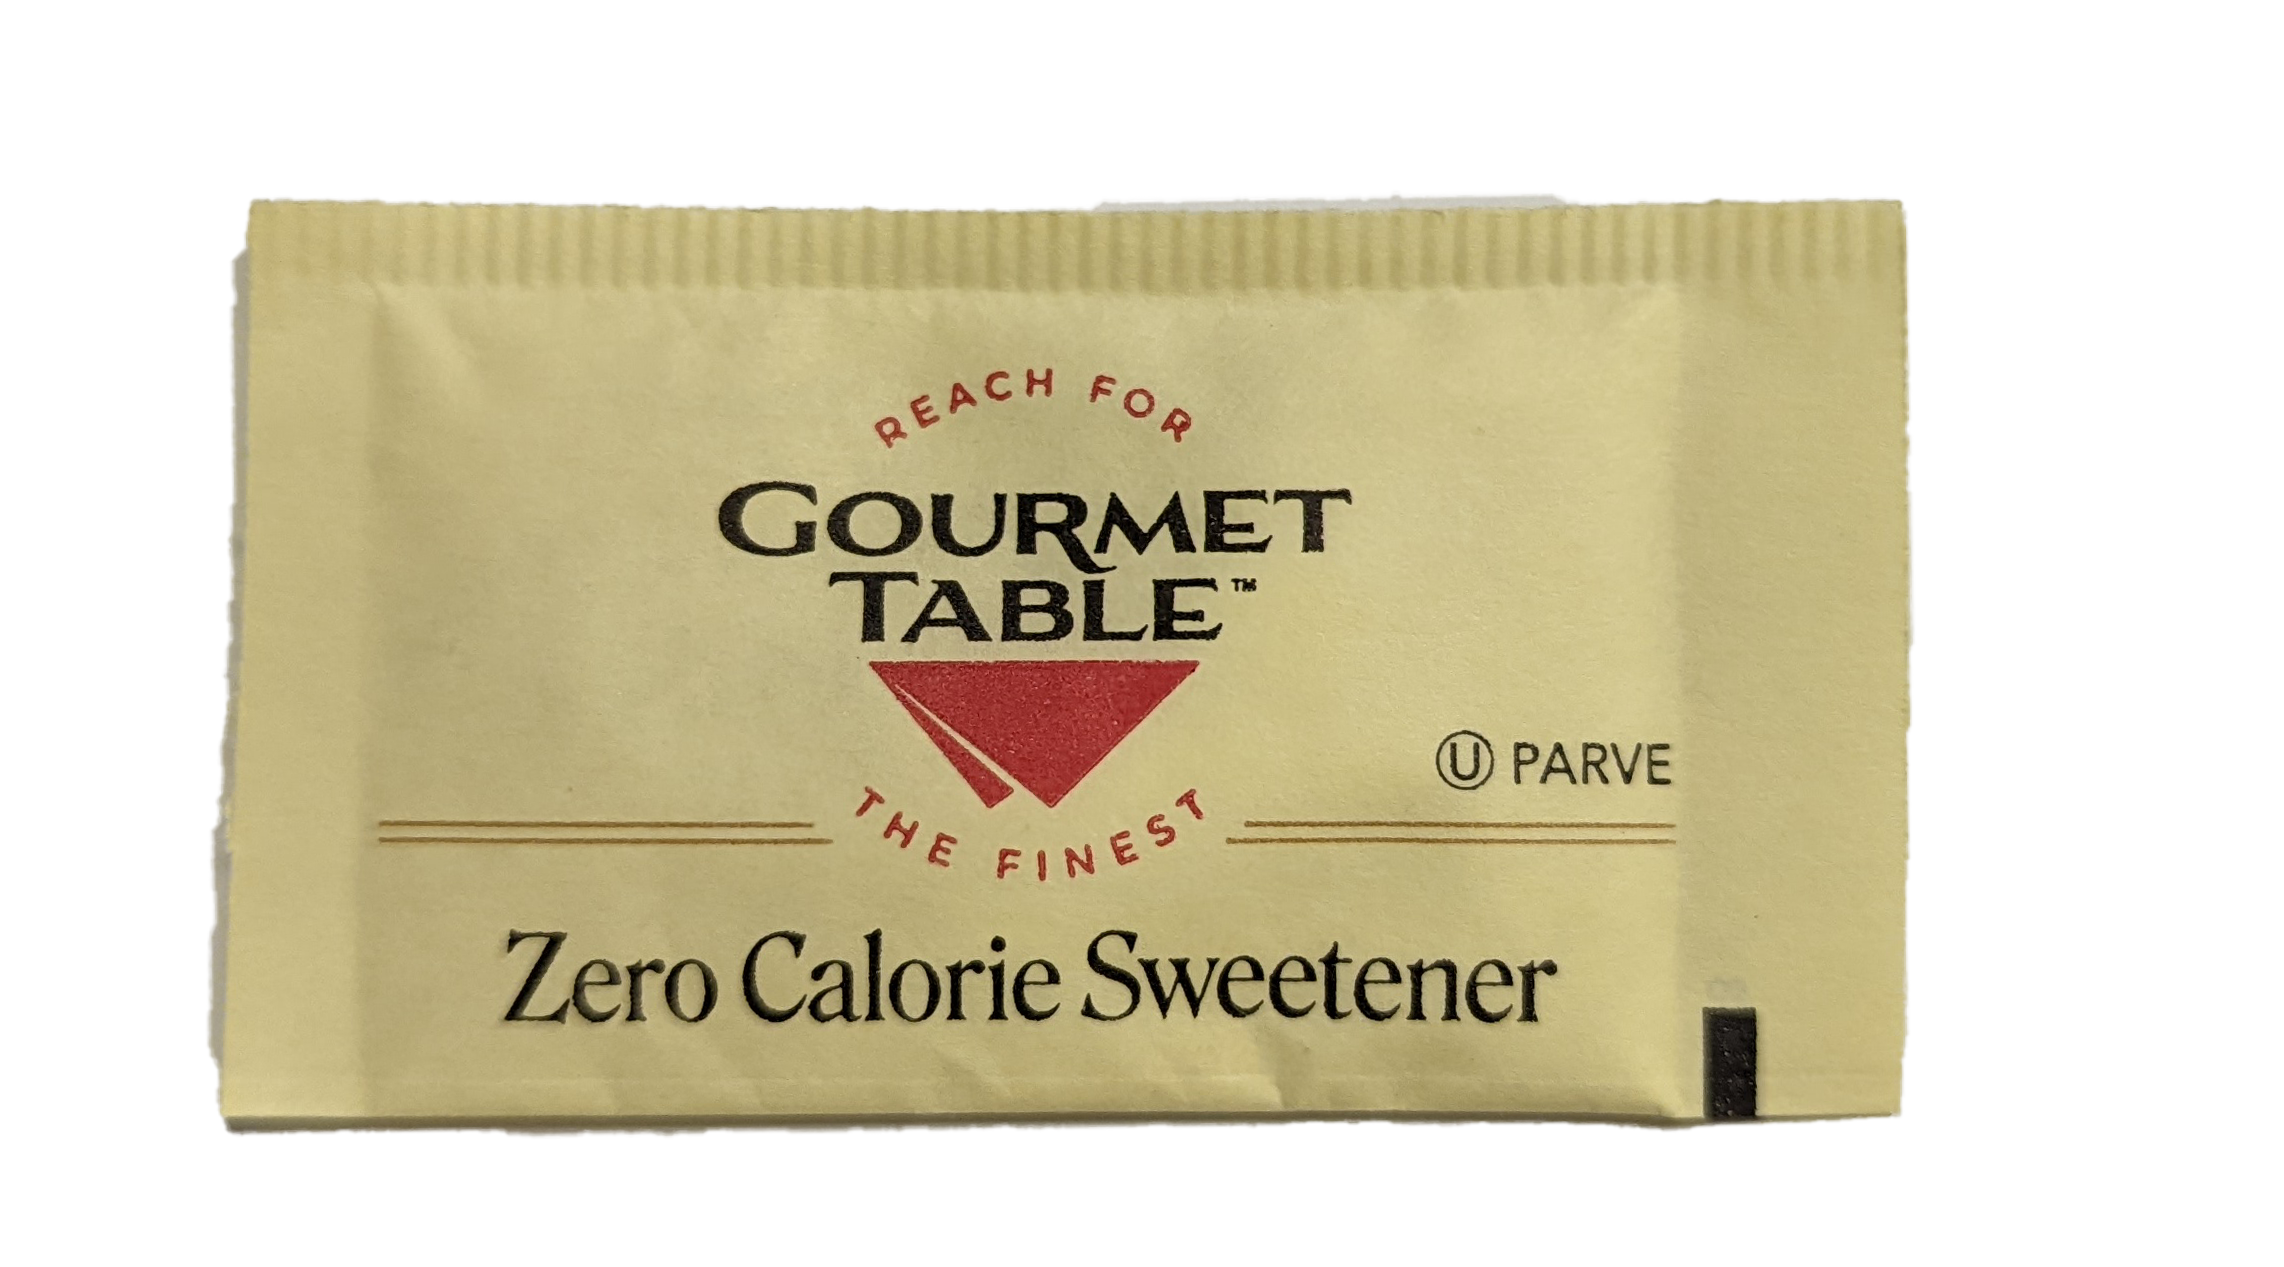 Gourmet Table Sugar Substitute Yellow Splenda